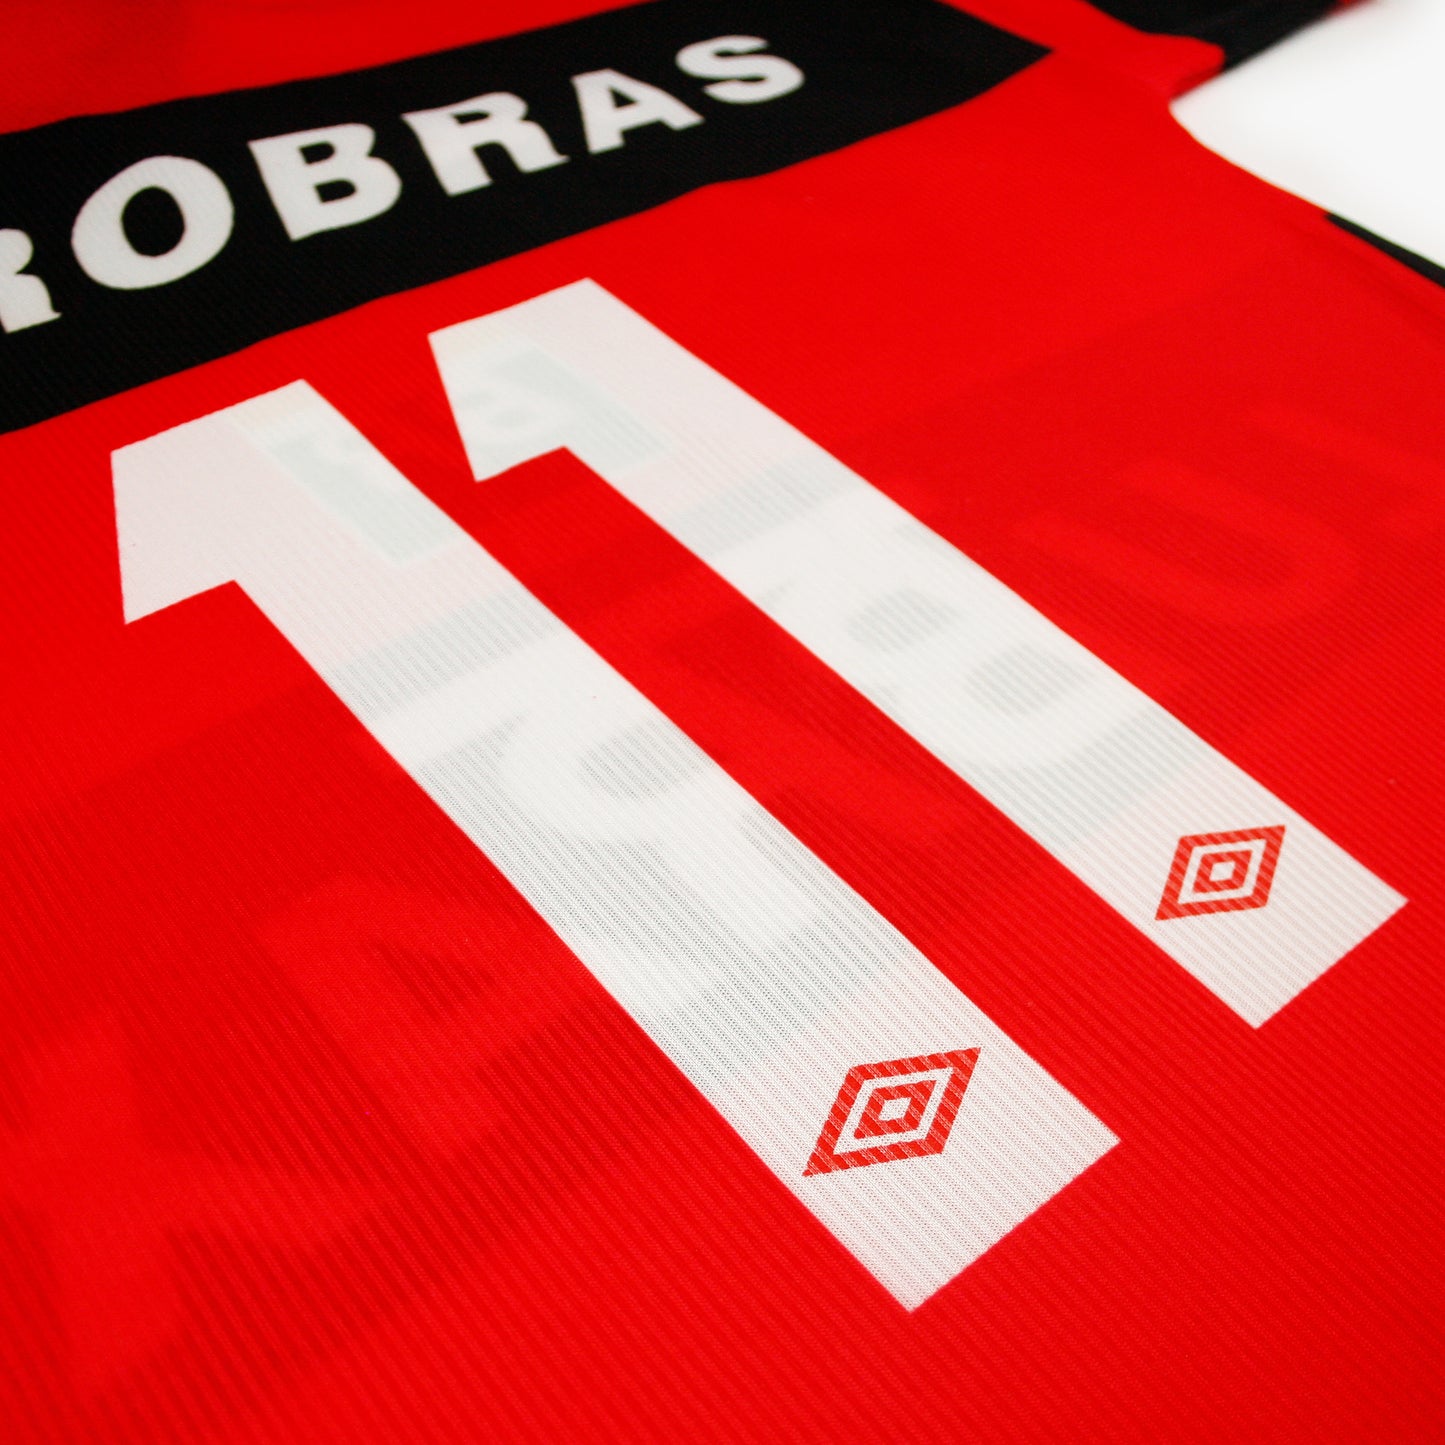 Flamengo 99/00 • Camiseta Local • M • #11 (Romário)